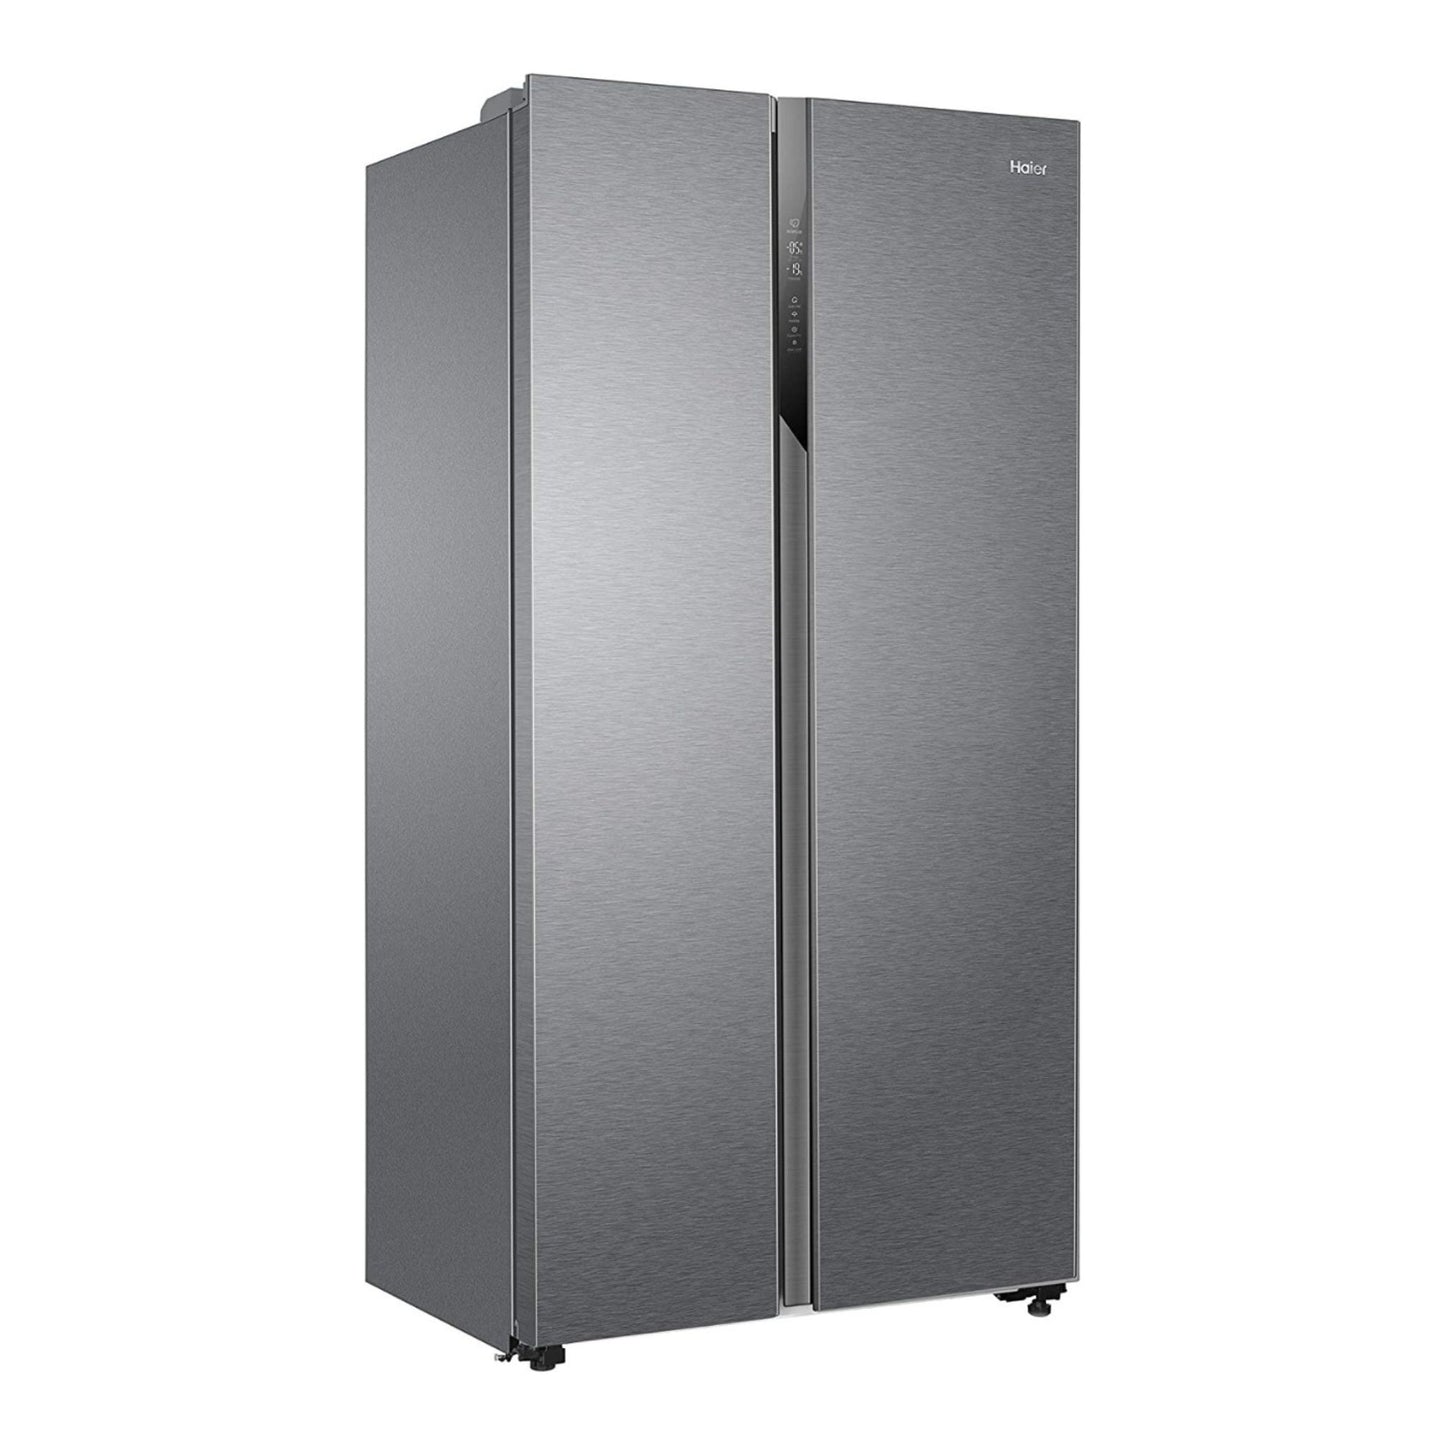 Haier 528L Side by Side Refrigerator, HSR3918EMPG